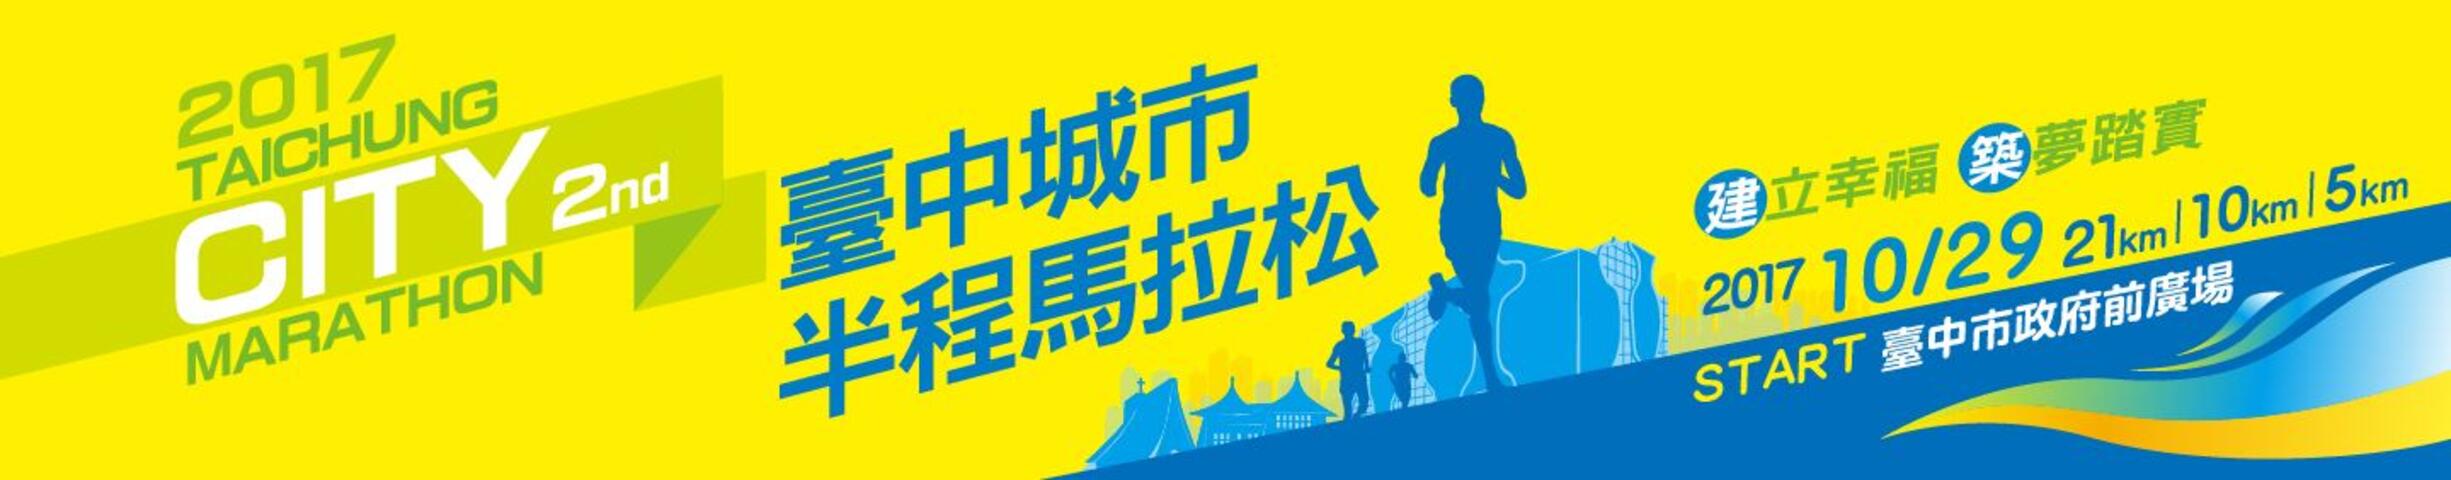 2017第二屆臺中城市半程馬拉松